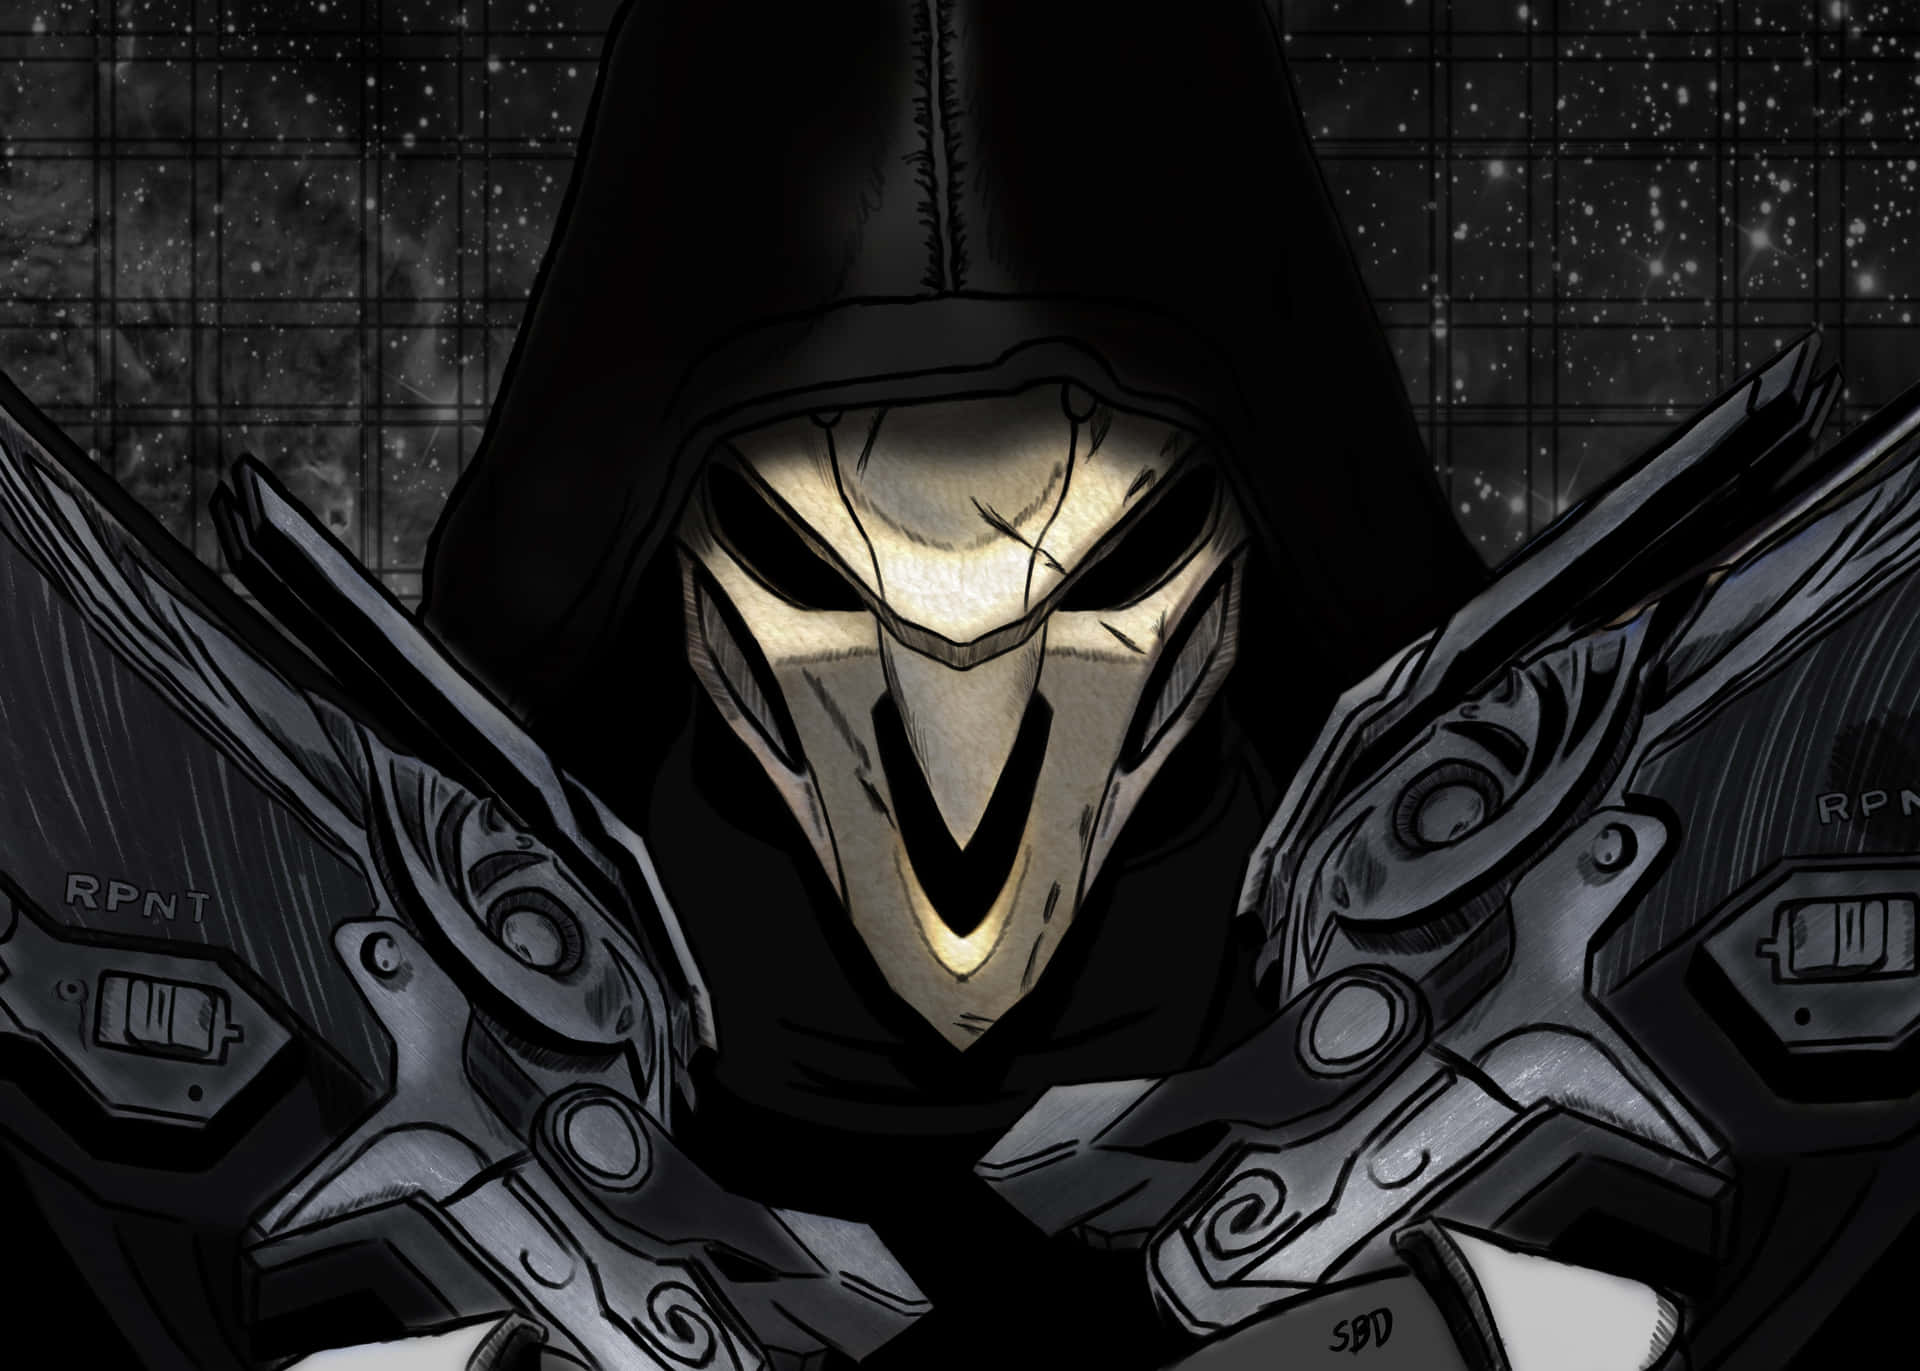 Overwatch Reaper 4200 X 3000 Wallpaper